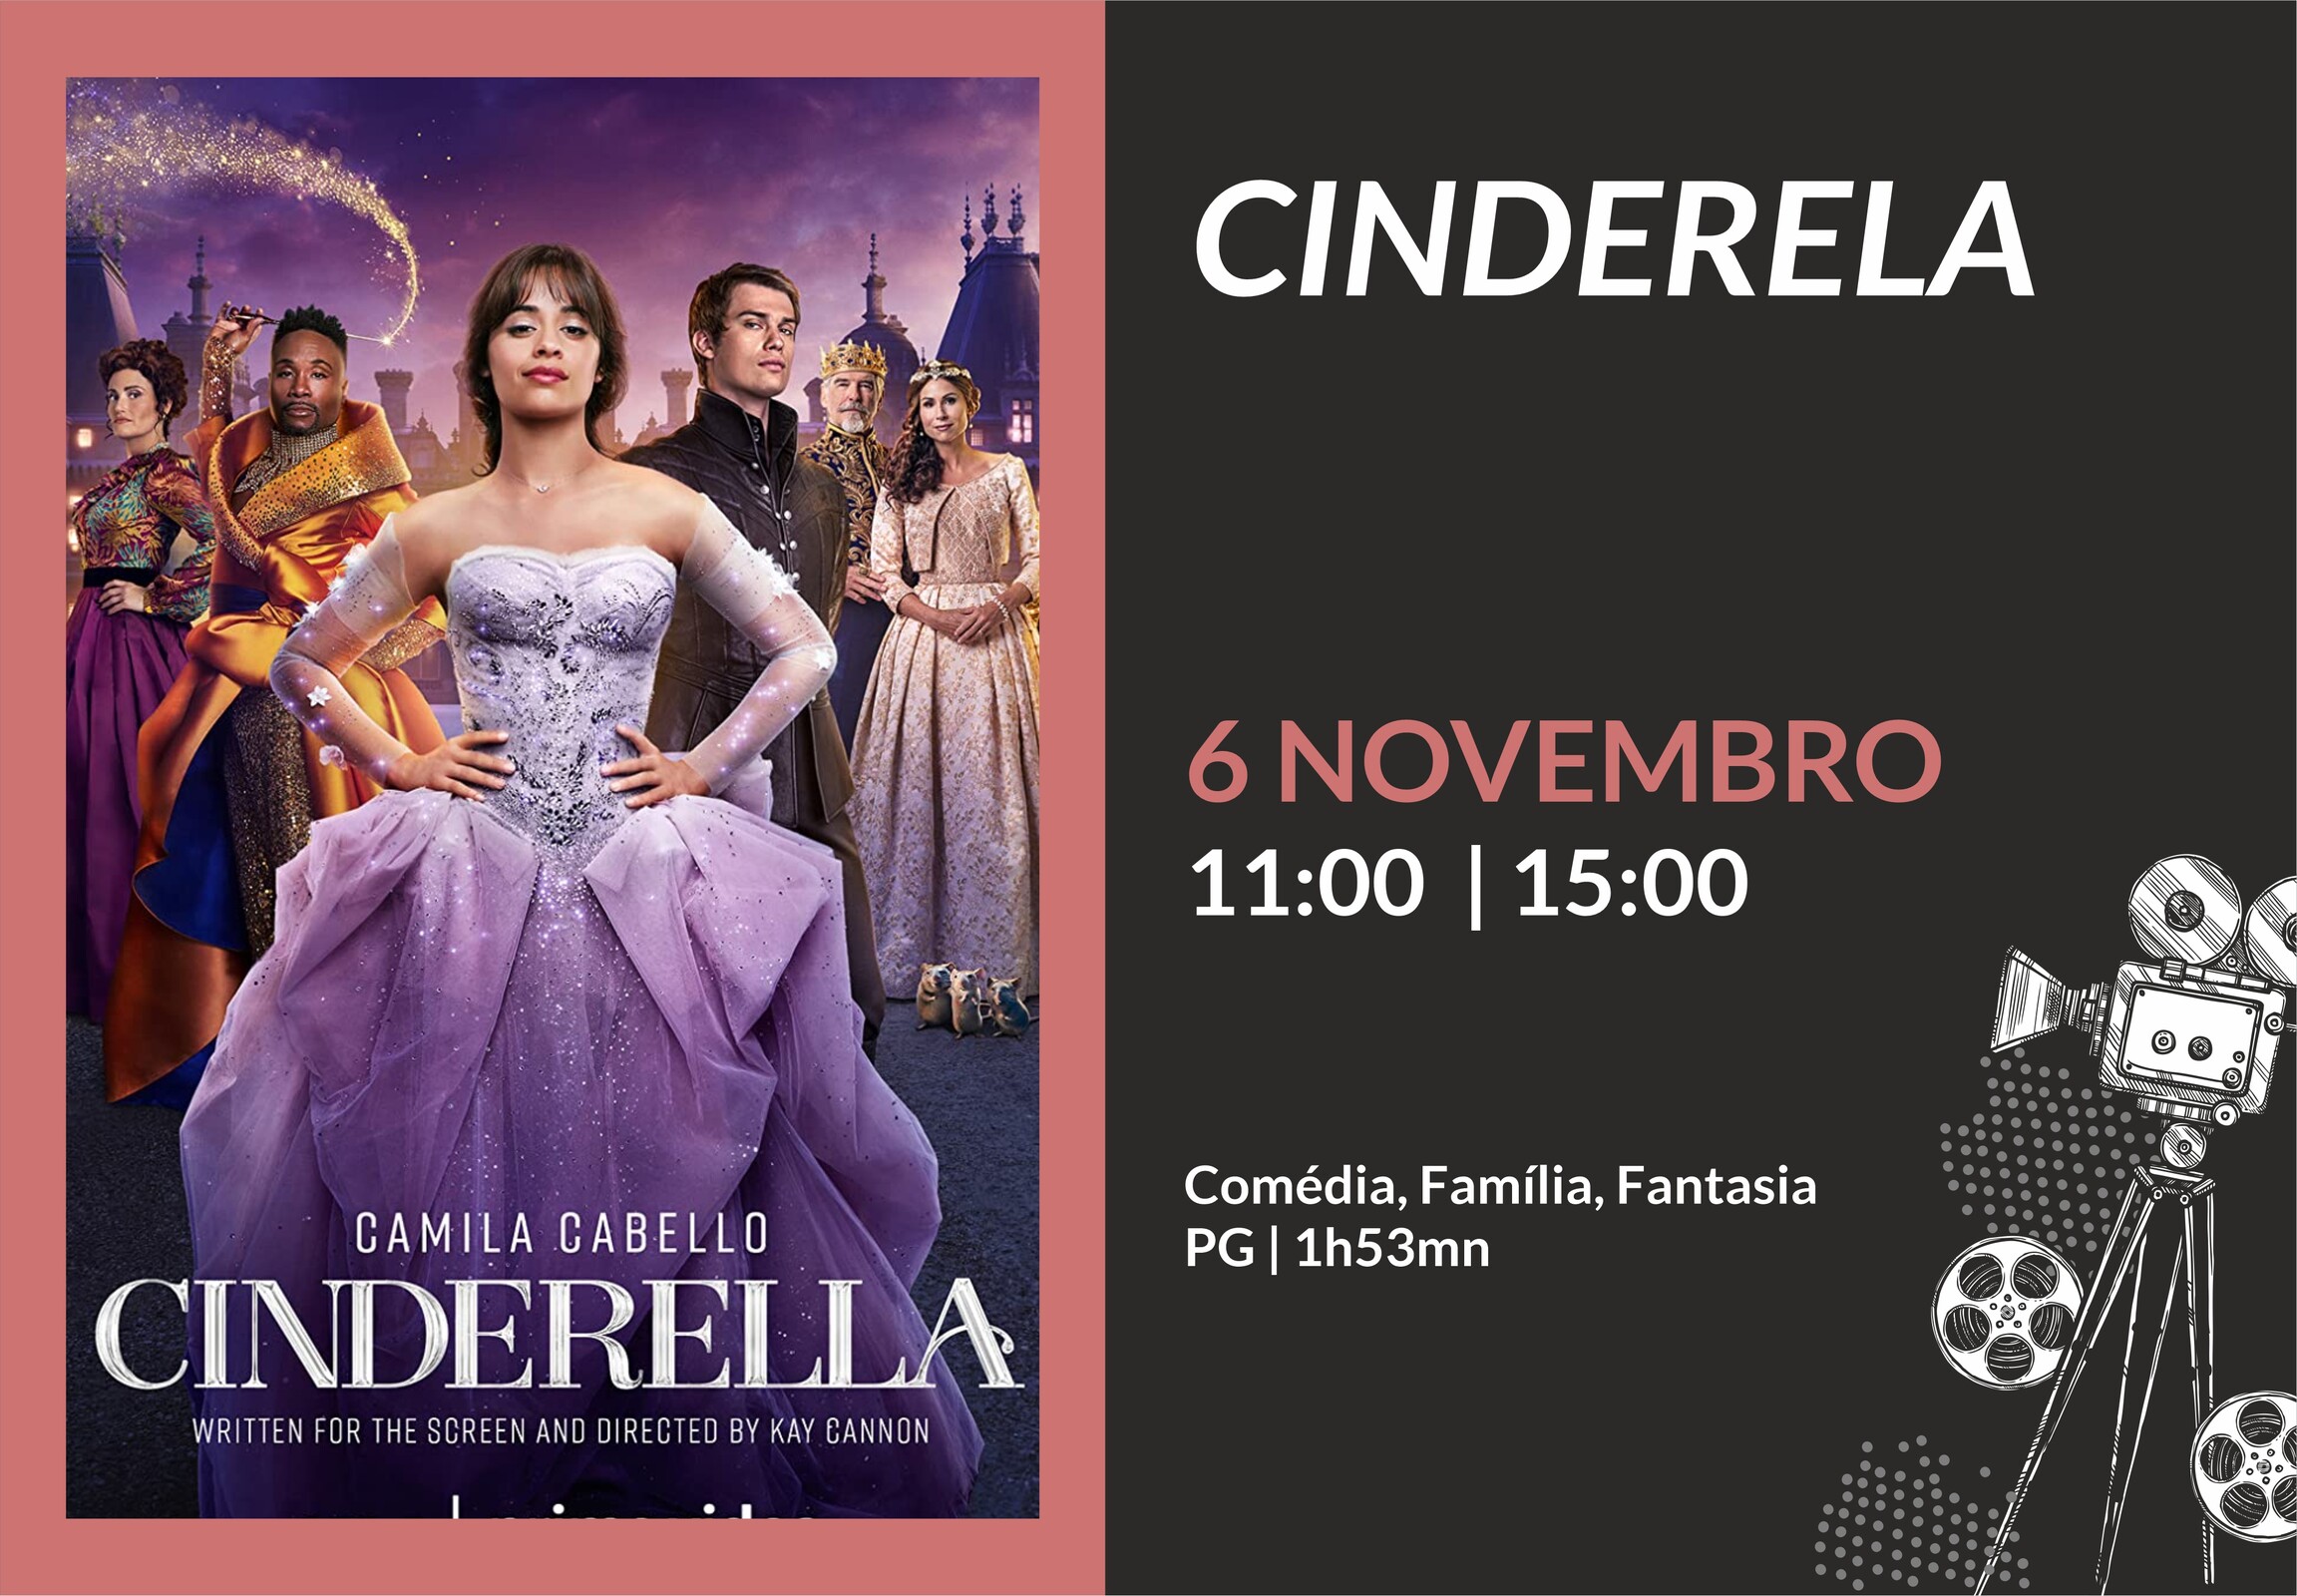  Cinema: Cinderela 